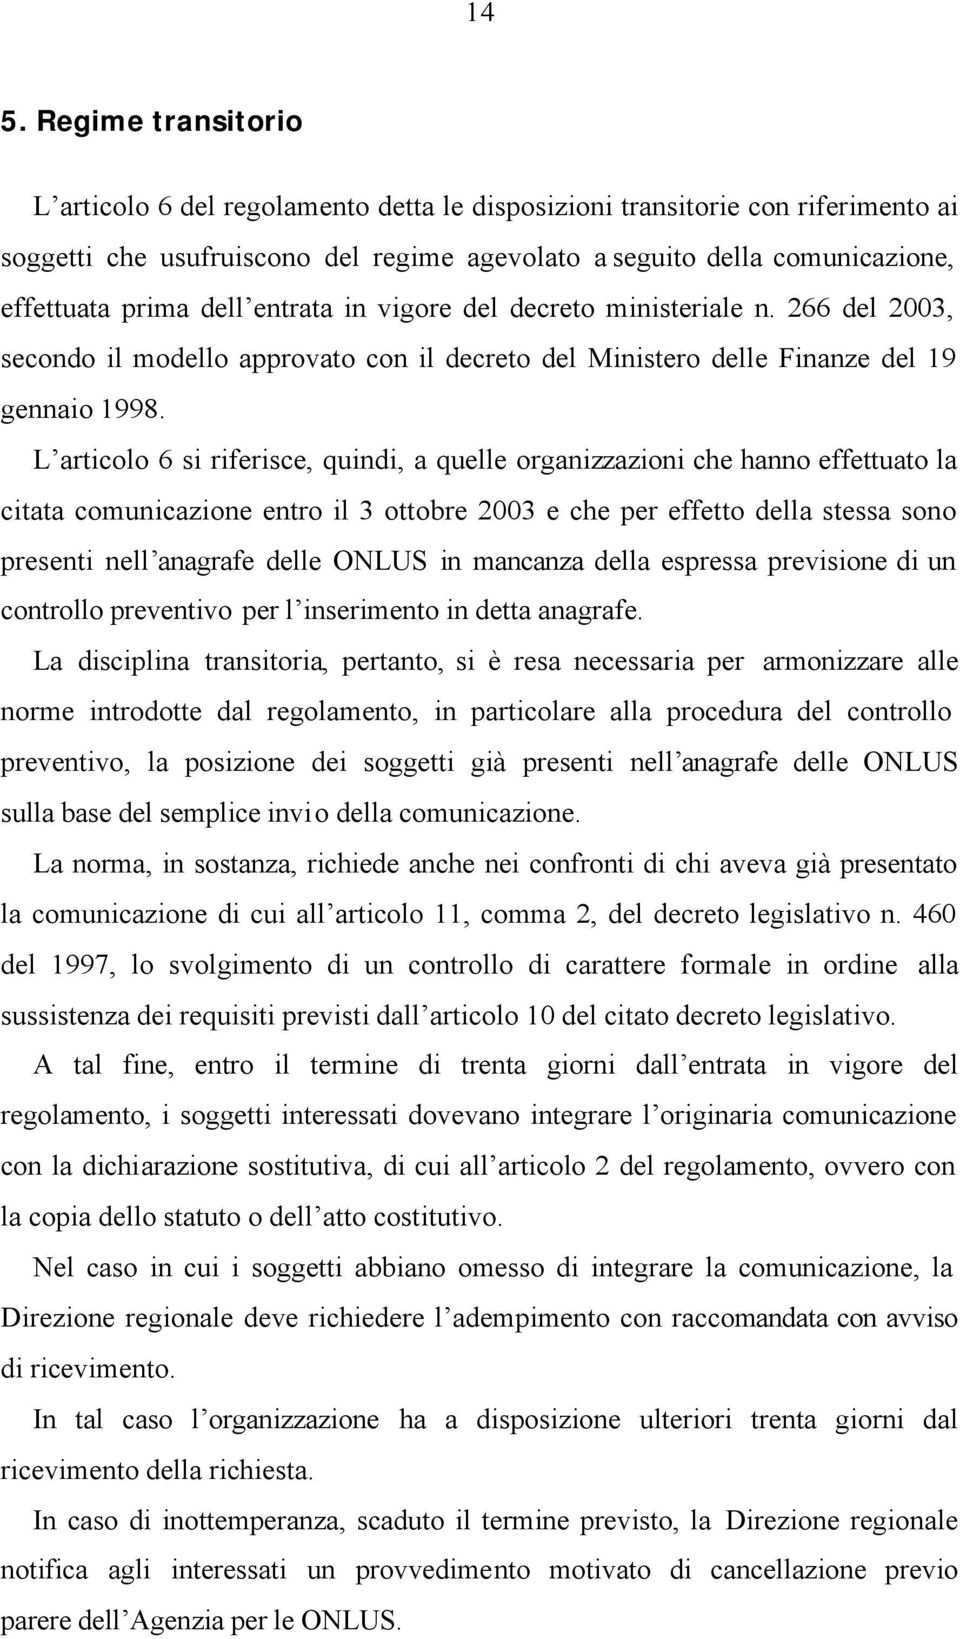 L articolo 6 si riferisce, quindi, a quelle organizzazioni che hanno effettuato la citata comunicazione entro il 3 ottobre 2003 e che per effetto della stessa sono presenti nell anagrafe delle ONLUS